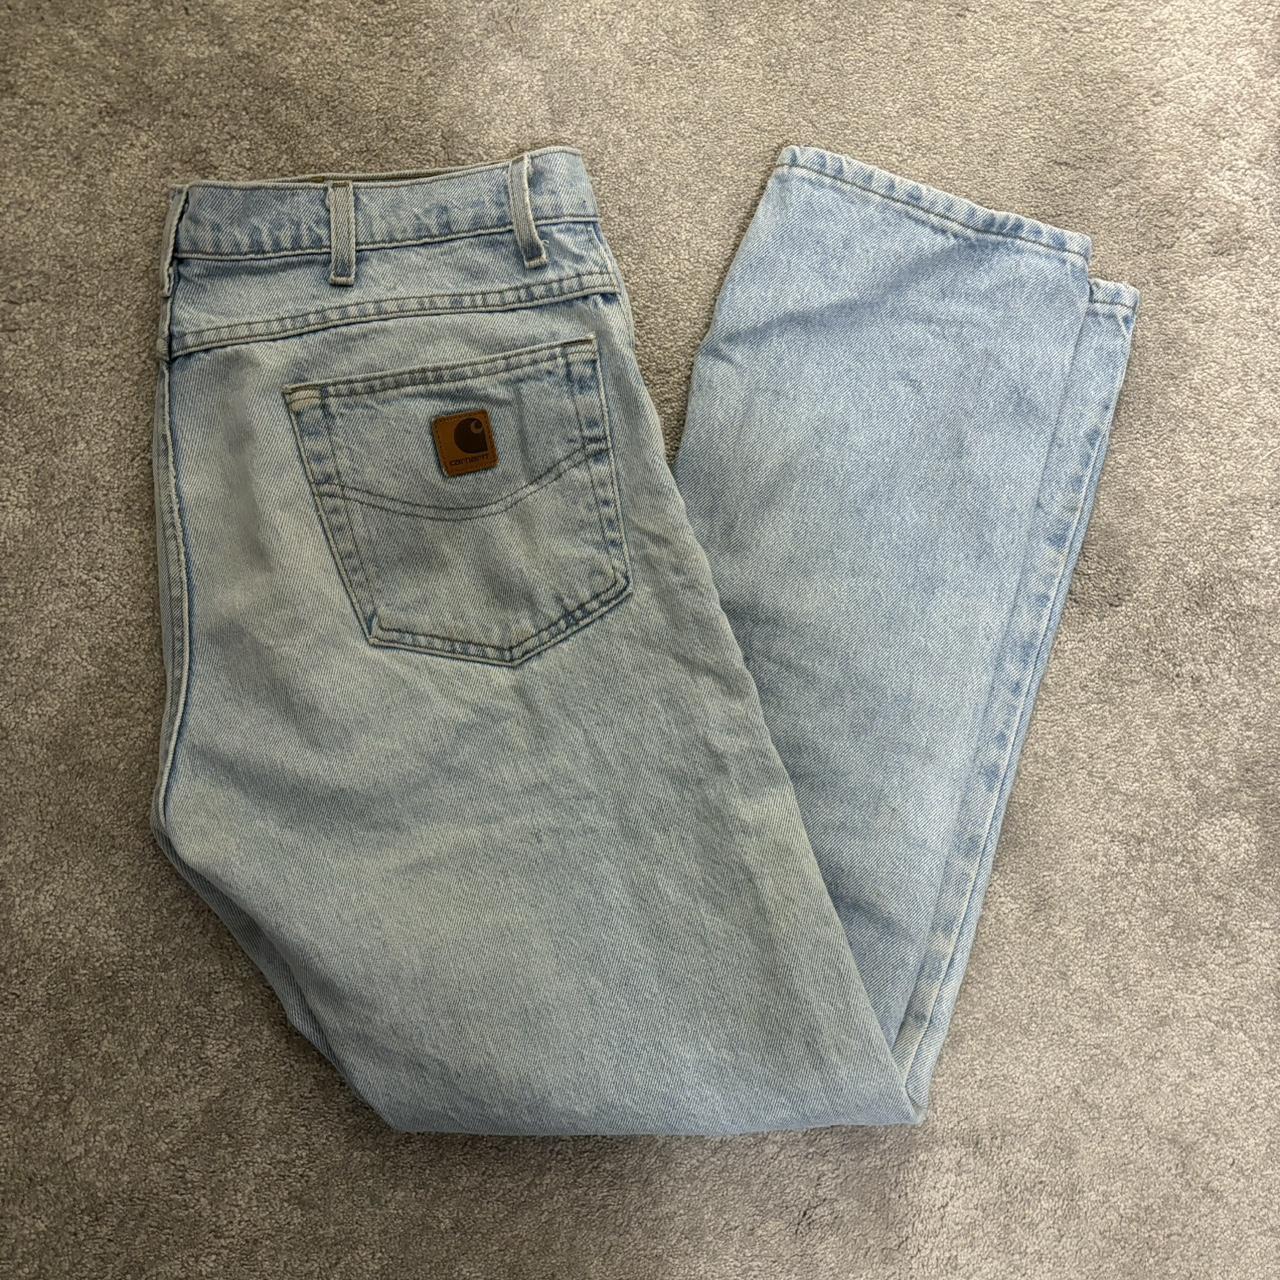 carhartts 35x30 #carhartt #jeans - Depop